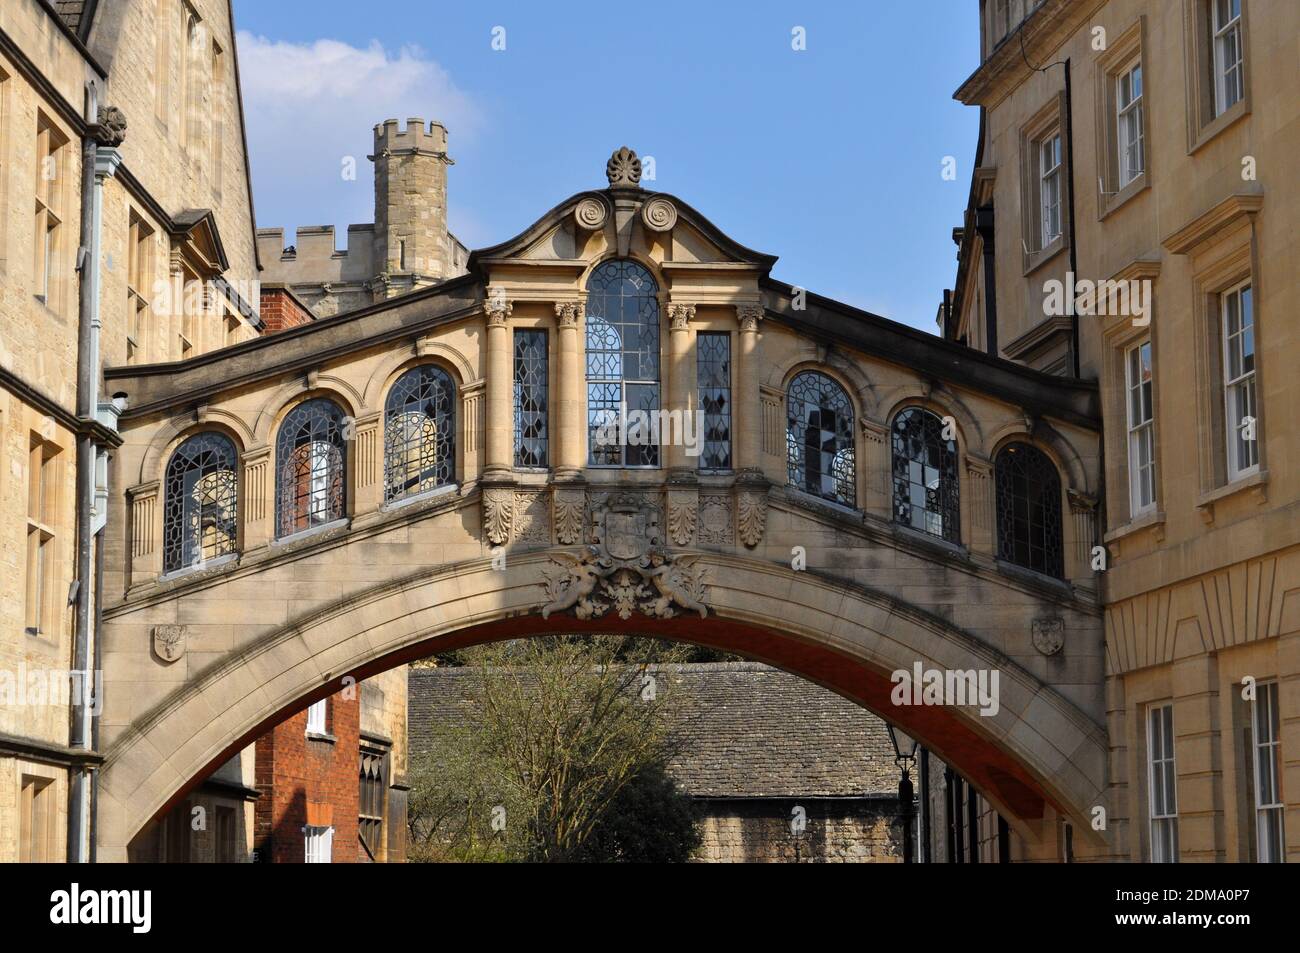 Hertford Bridge, également connu sous le nom de Bridge of Soupirs, rejoint deux parties du Hertford College au-dessus de New College Lane, Université d'Oxford Banque D'Images